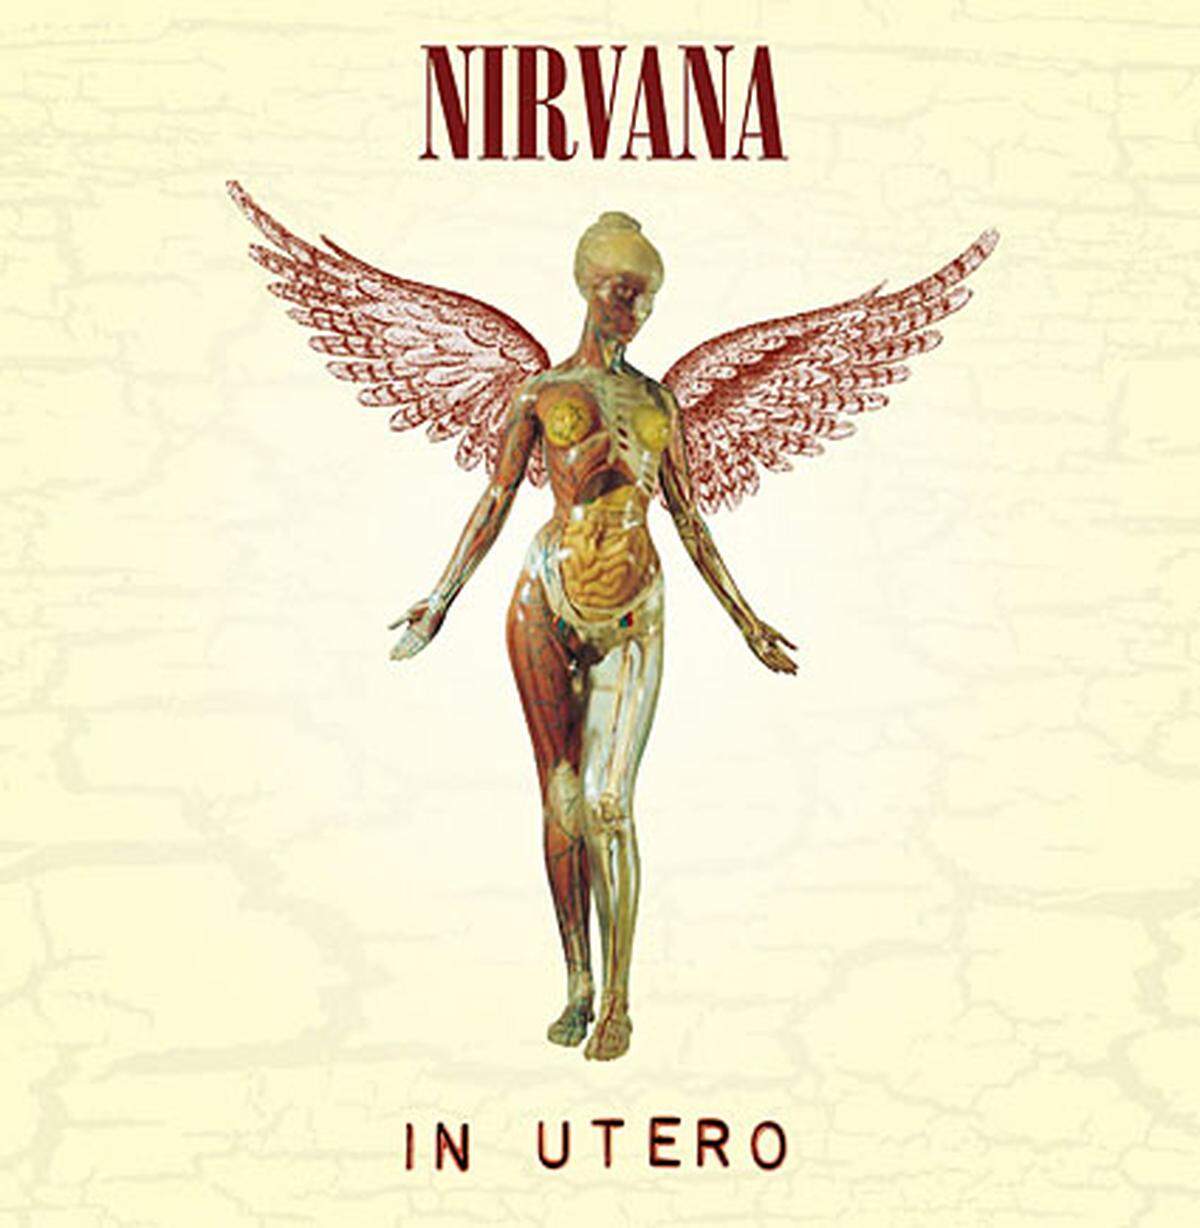 Mit Produzent Steve Albini veröffentliche Nirvana 1993 das dritte reguläre Album "In Utero". In Großbritannien stieg es auf Nummer eins in die Charts ein. Im Herbst begann die Band mit ihrer Welttournee.